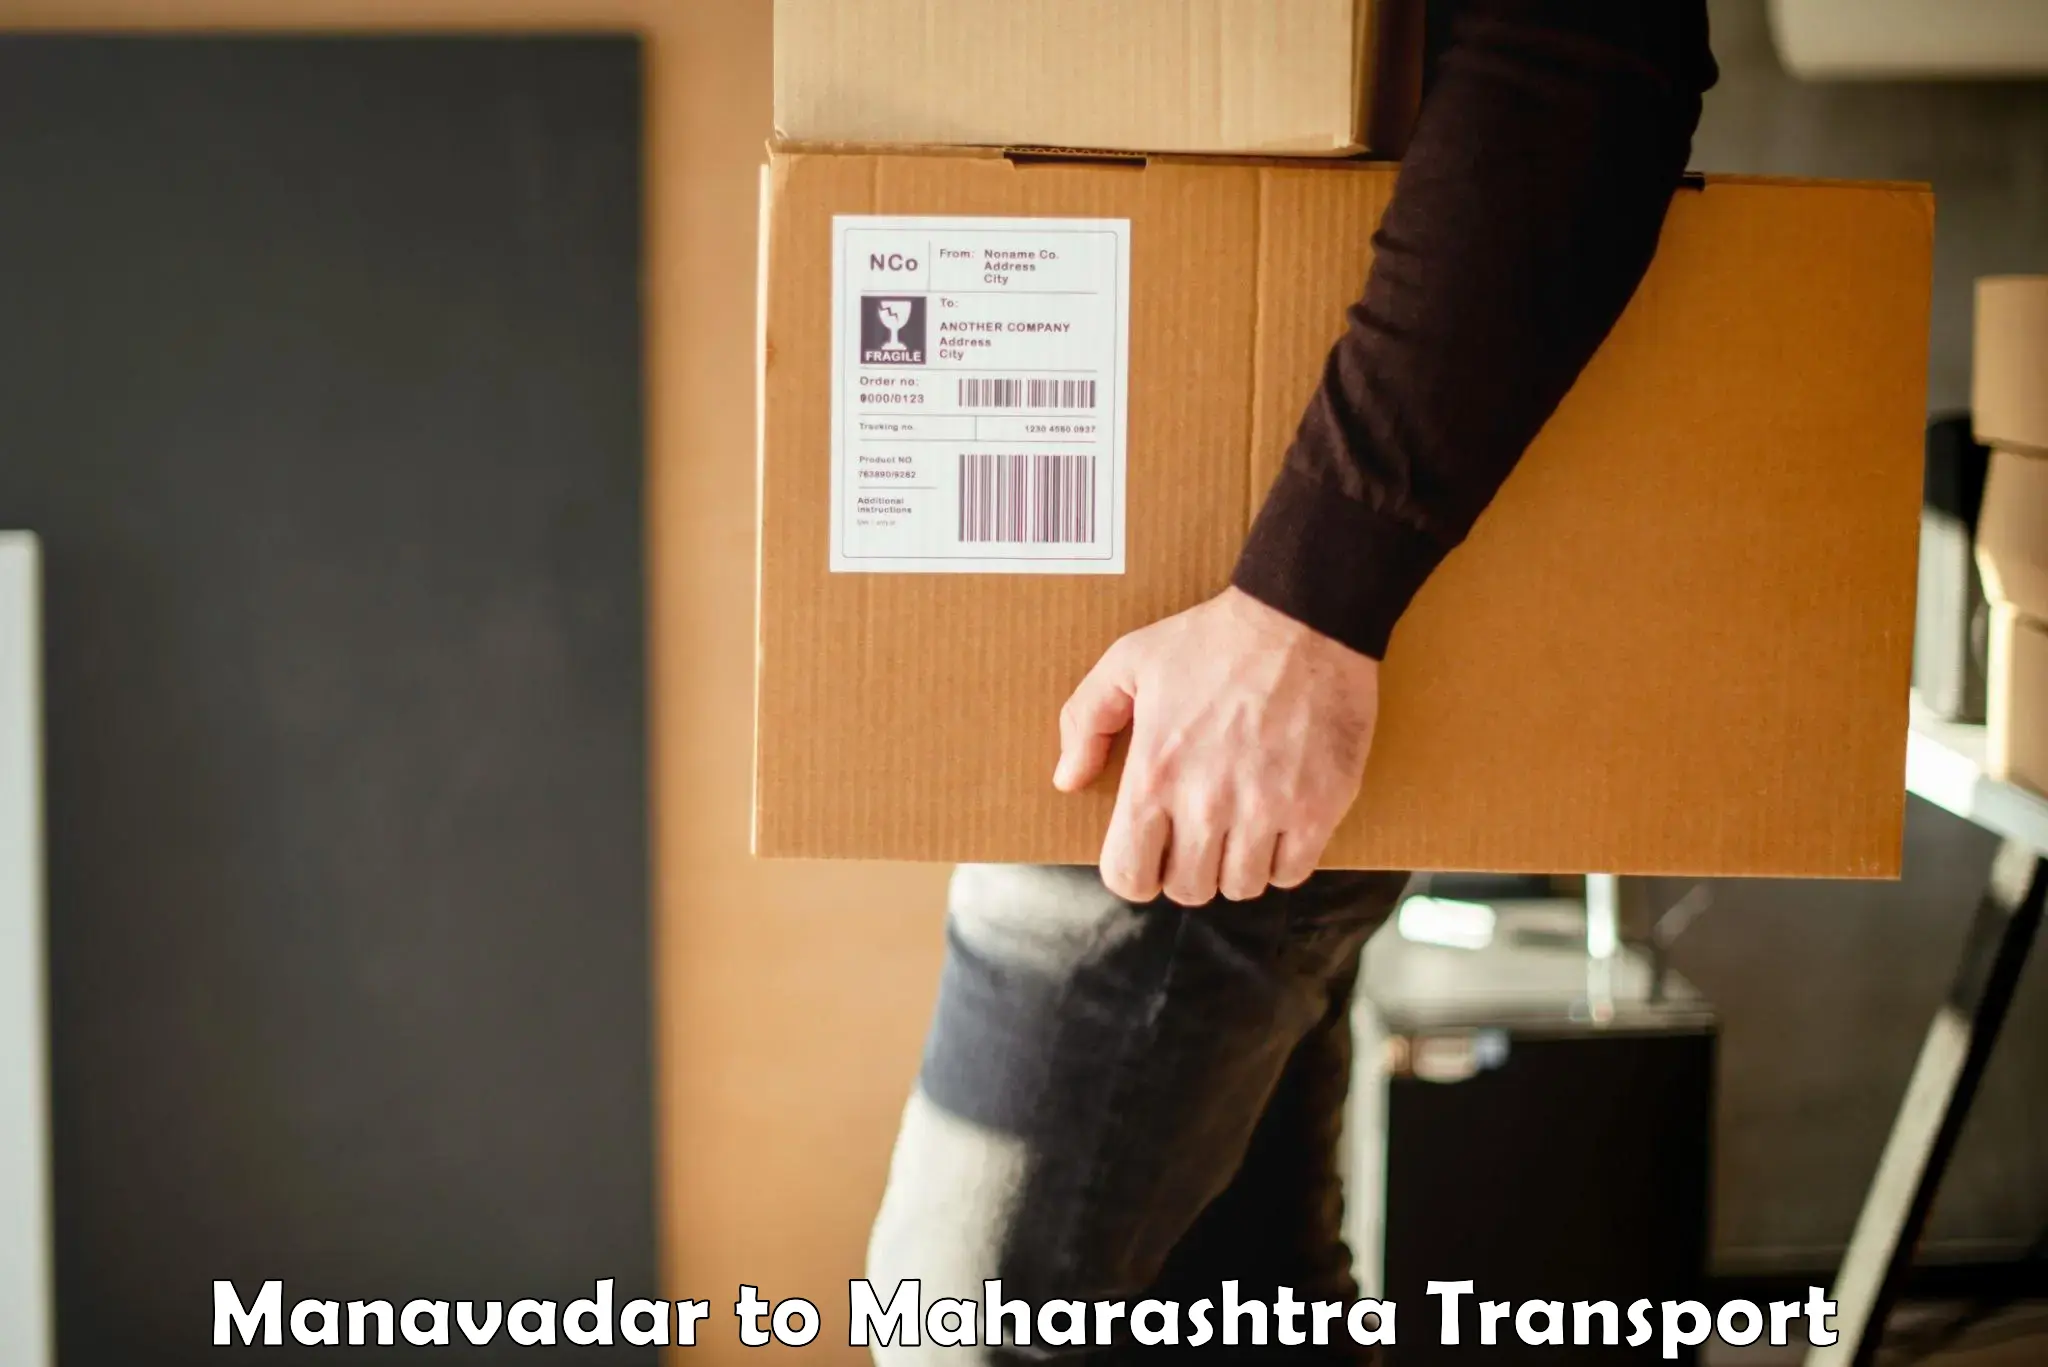 Daily transport service Manavadar to Maharashtra